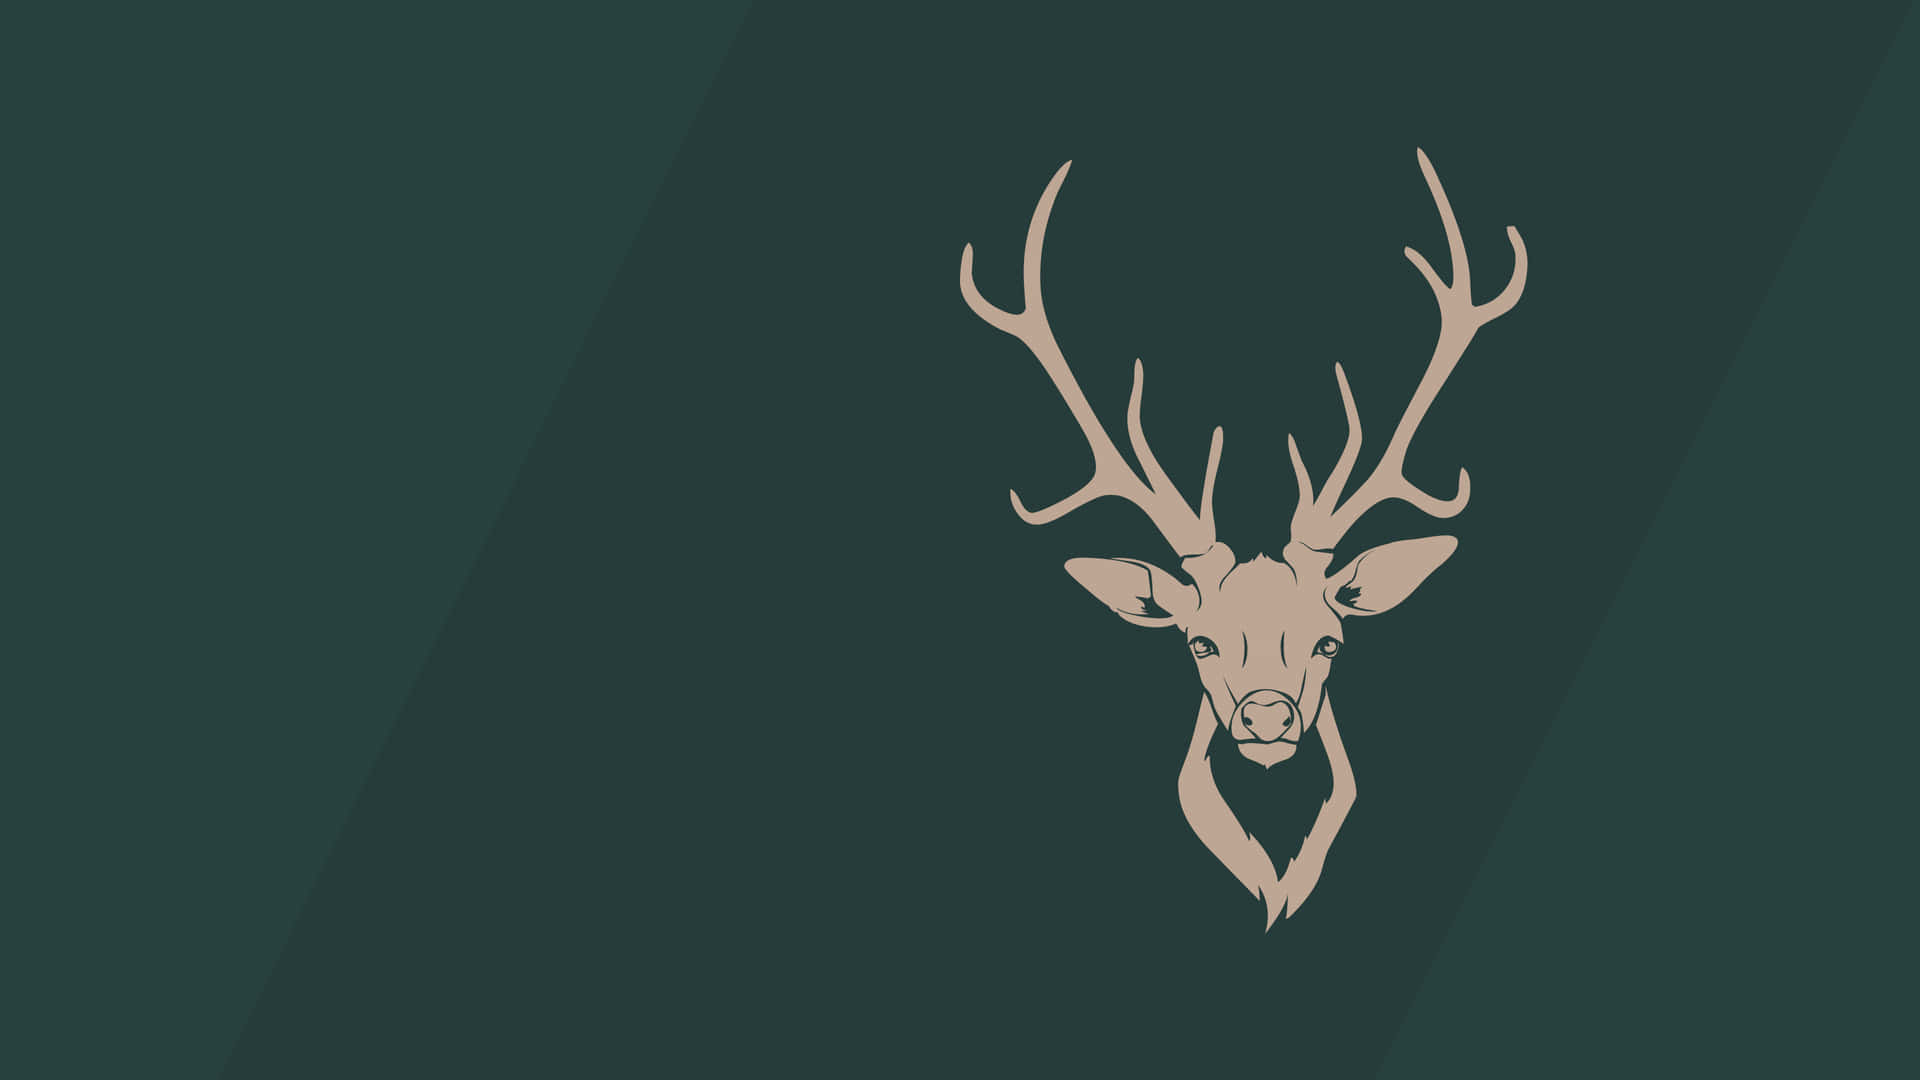 A Deer Head On A Green Background Wallpaper